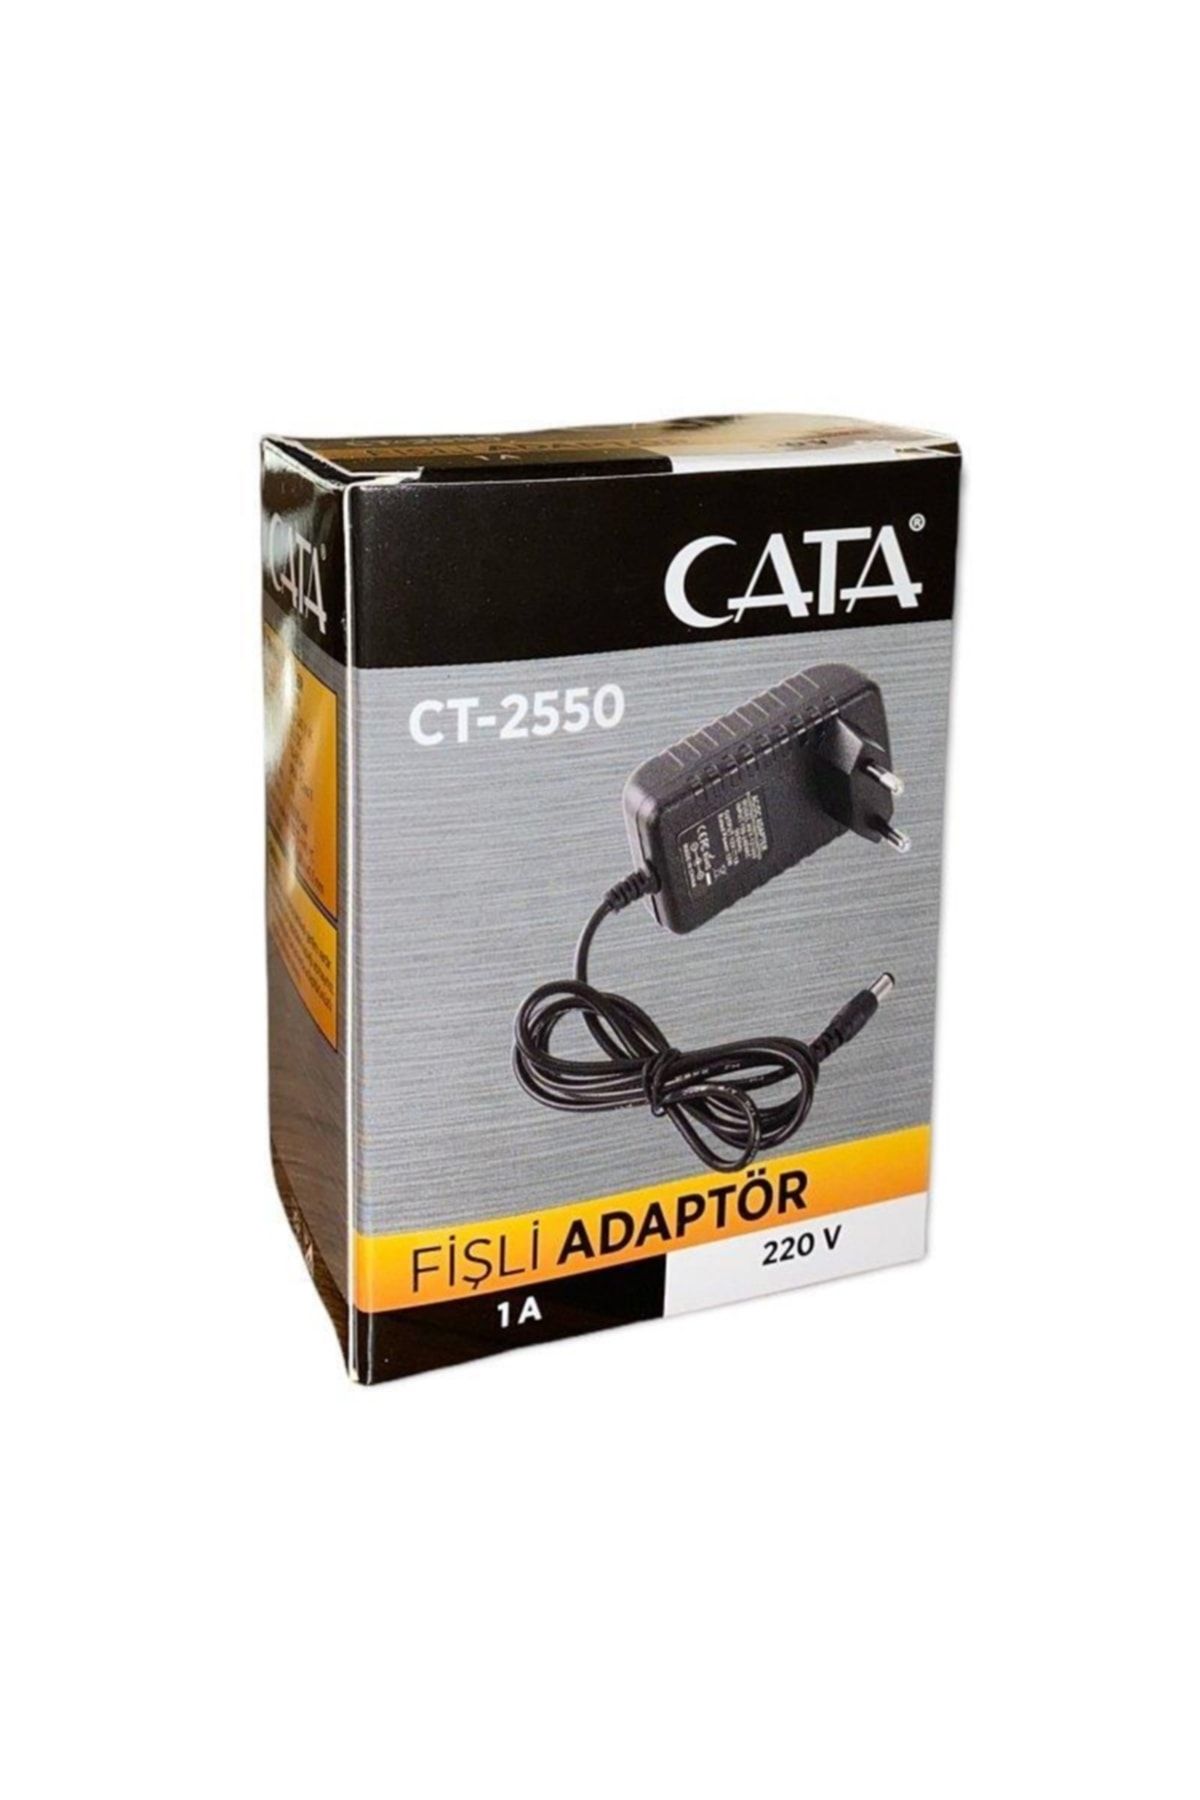 Cata Ct-2550 12v 1a Adaptör